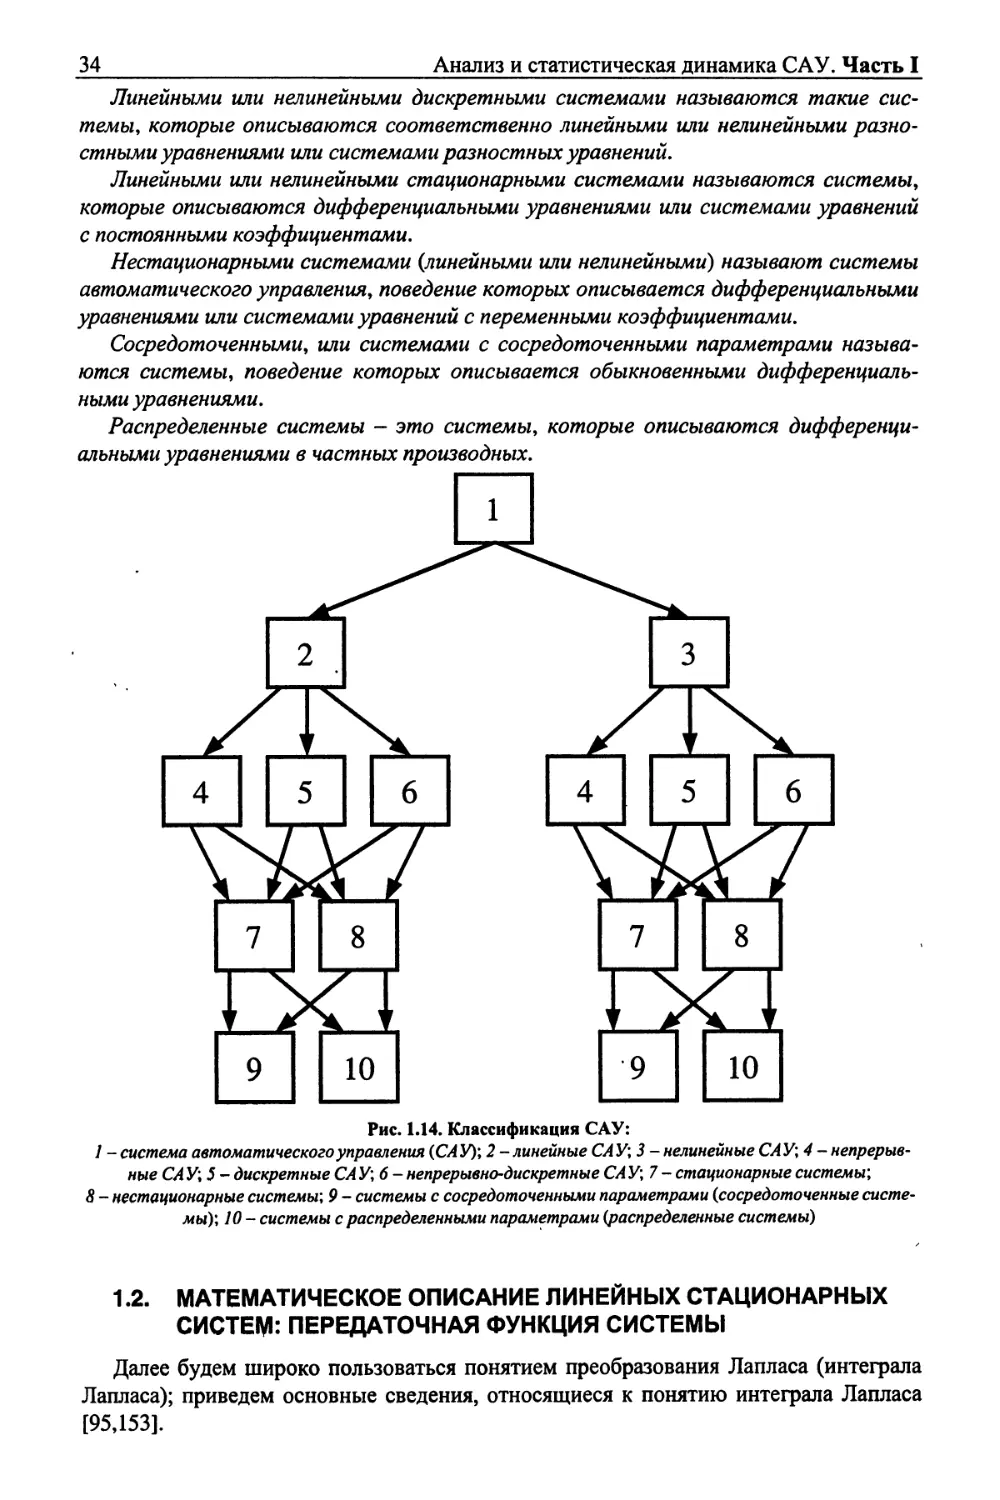 1.2. Математическое описание линейных стационарных систем: передаточная функция системы